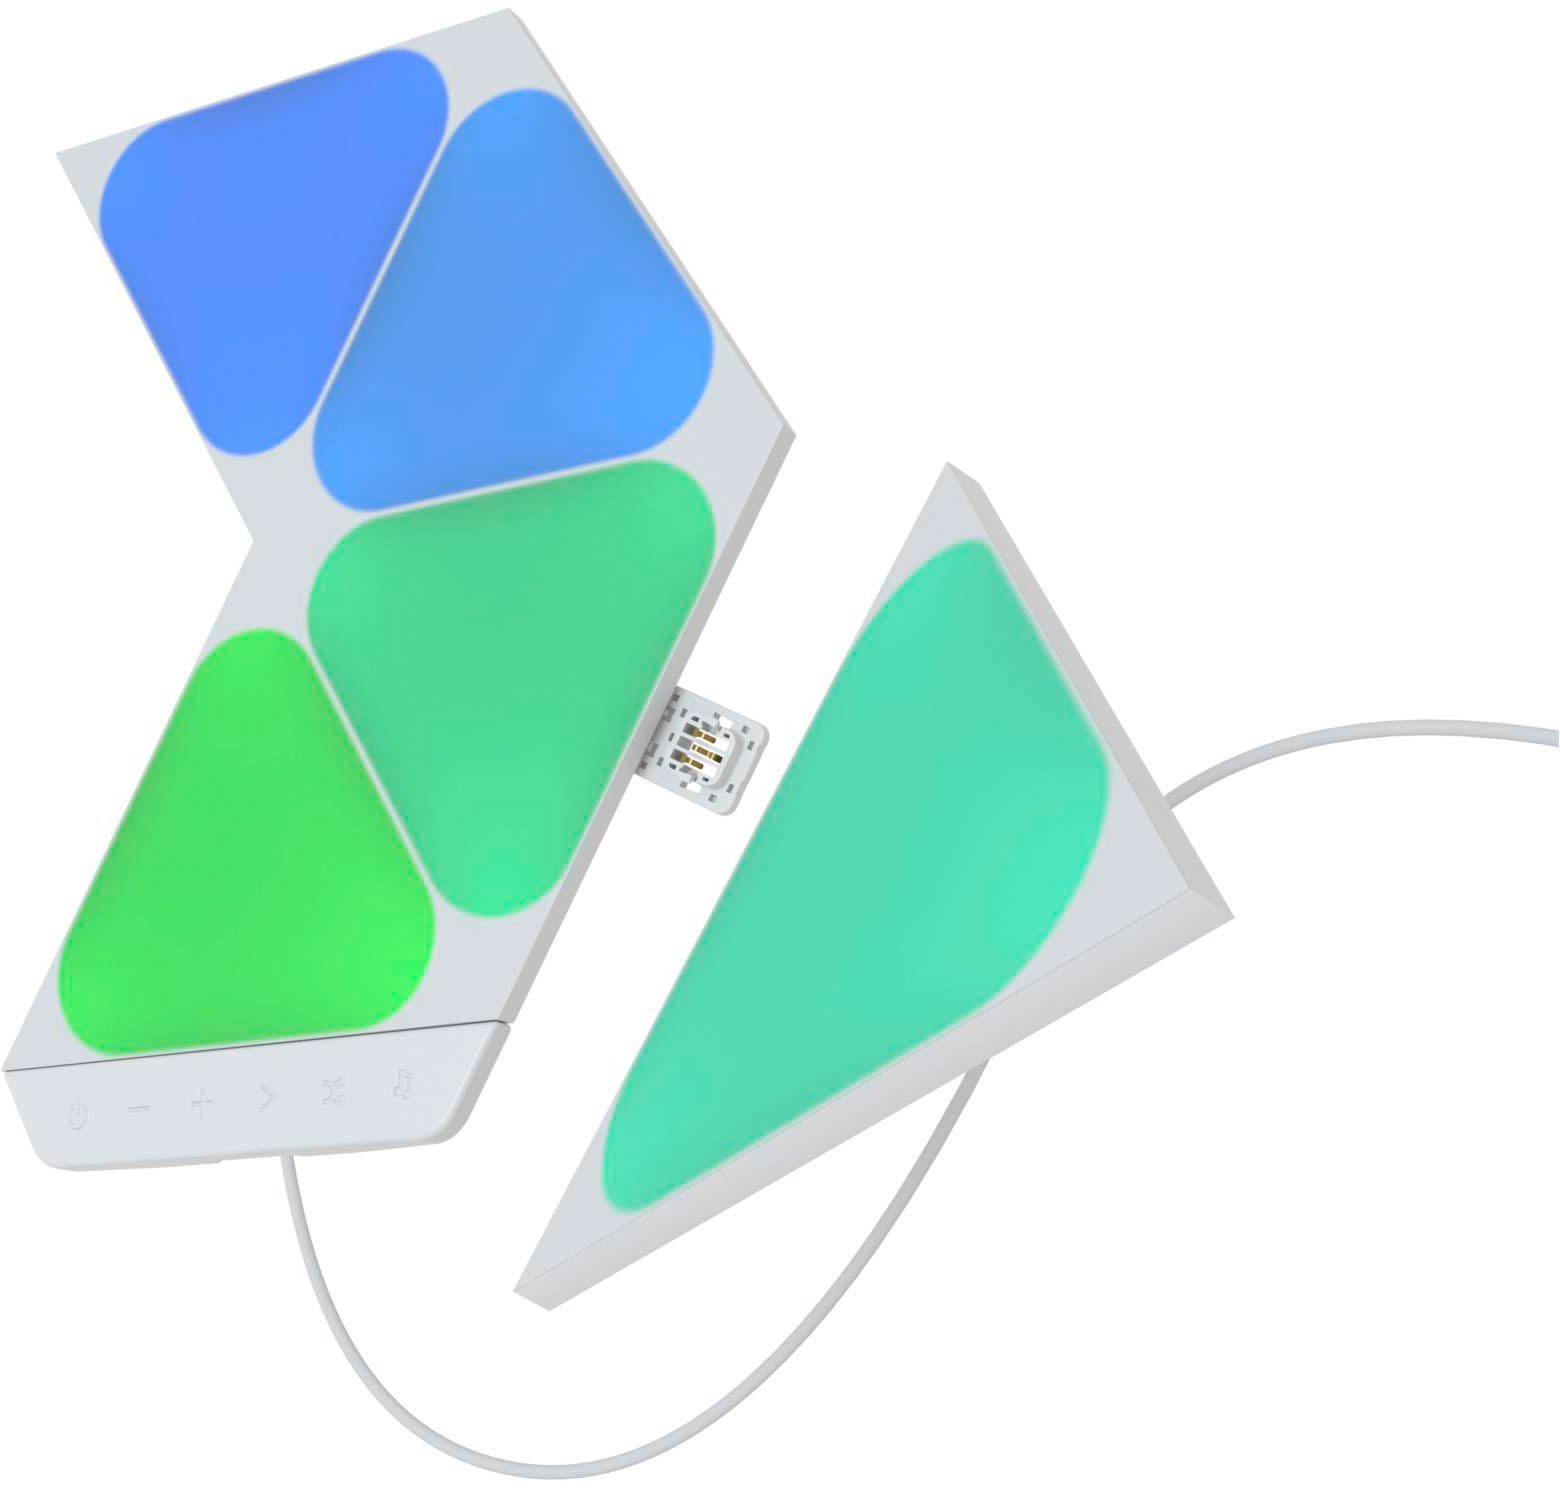 LED nanoleaf fest Mini, Panel Farbwechsler Triangles integriert, Shapes LED Dimmfunktion,